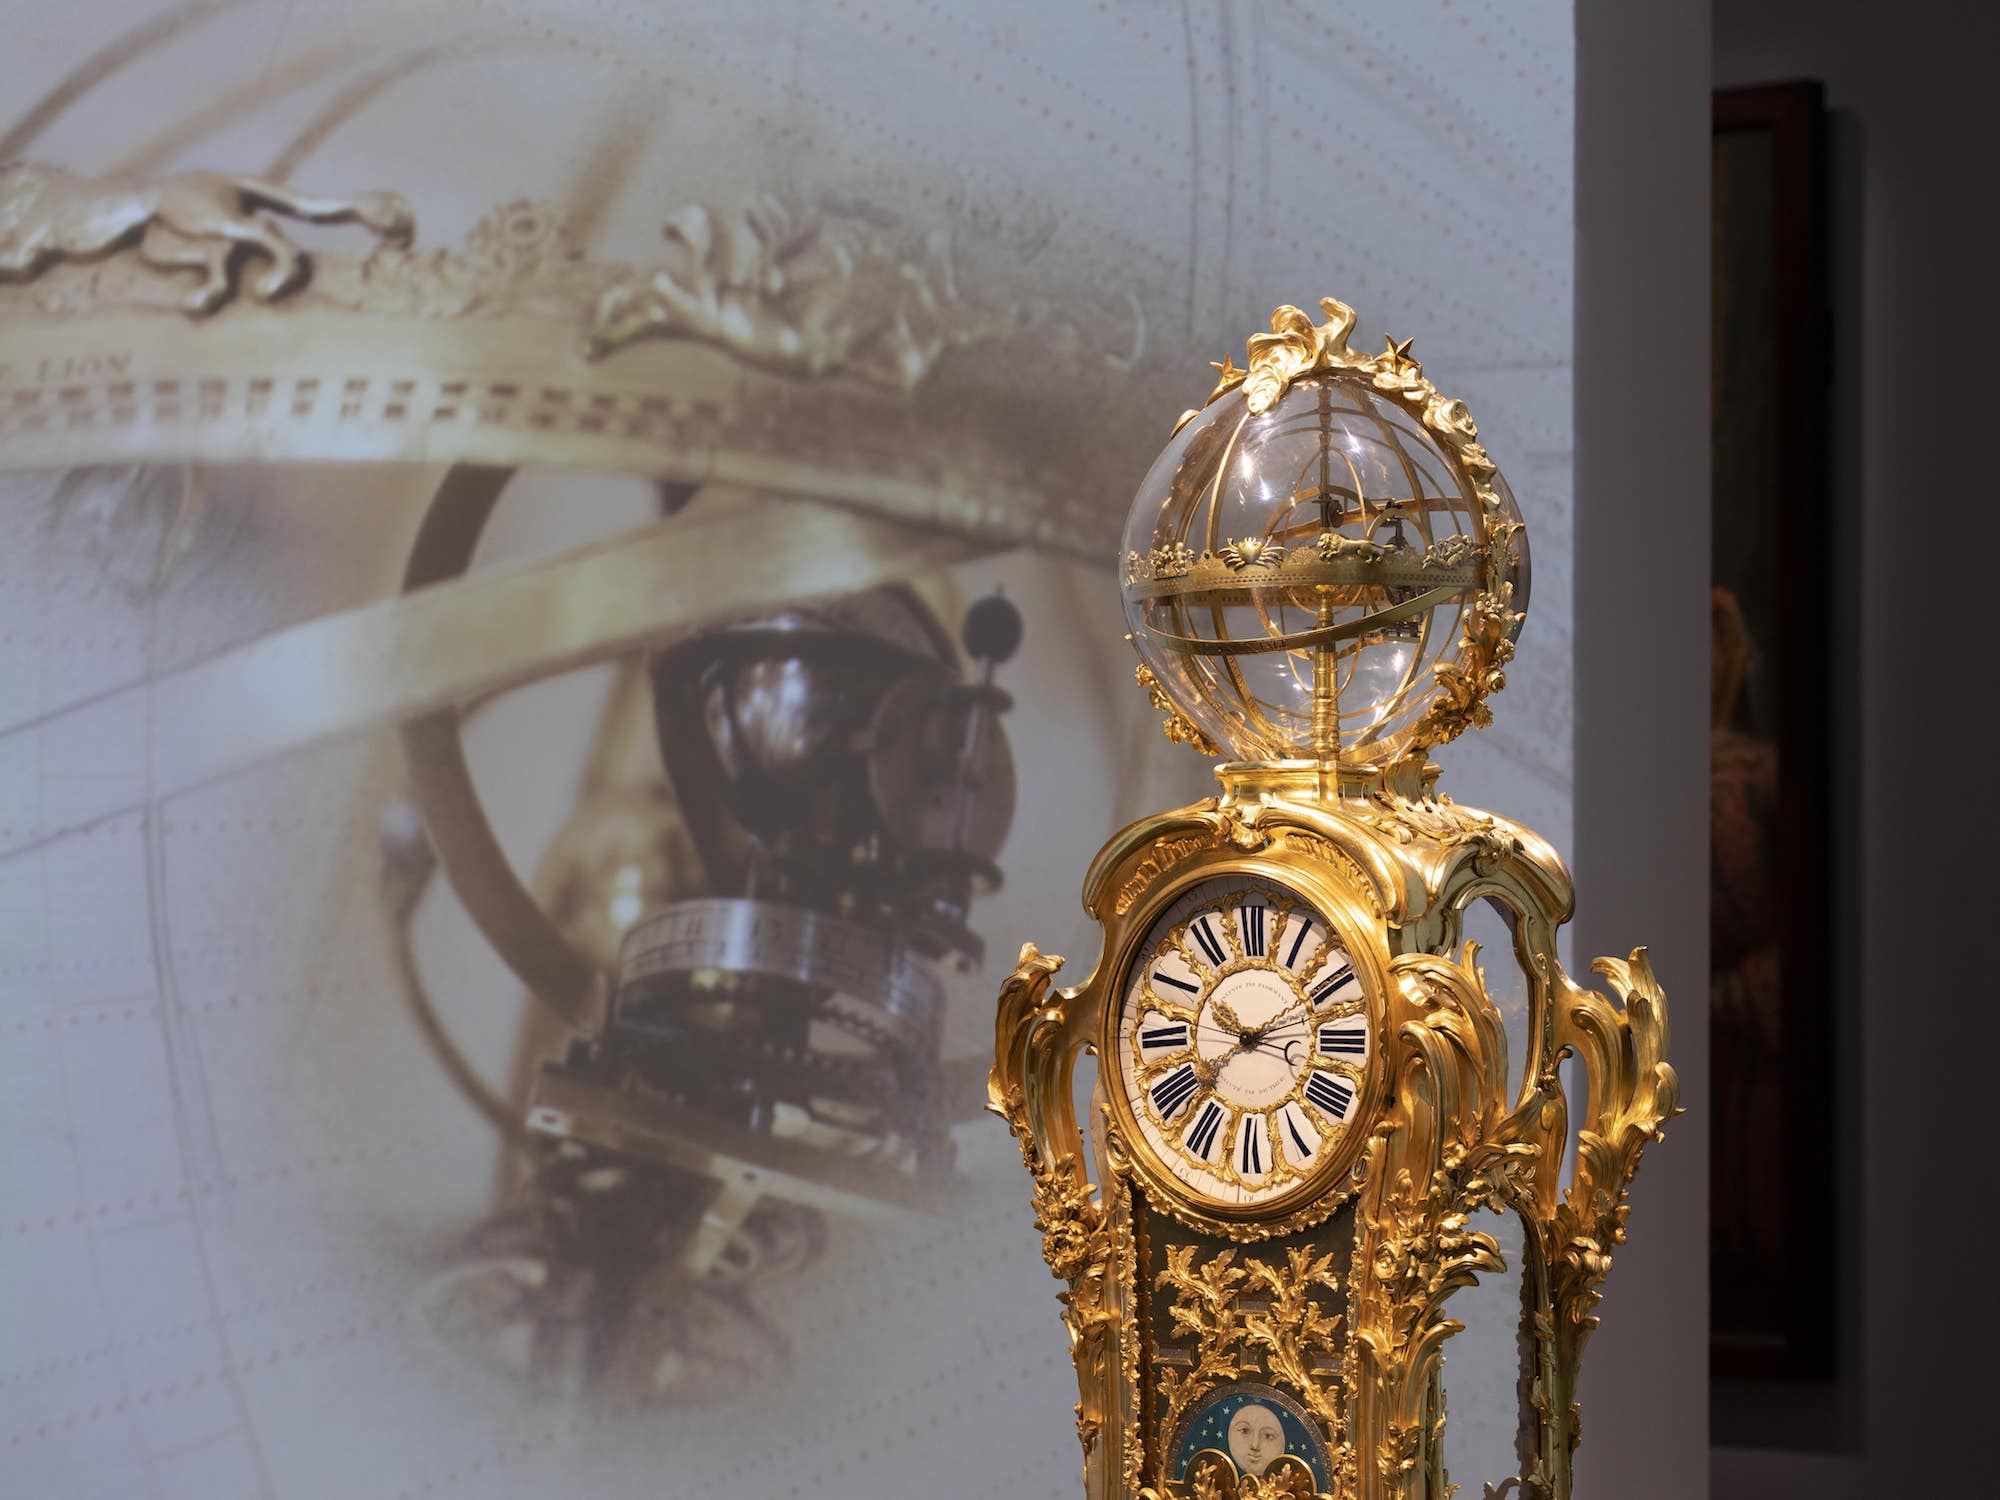 Claude-Siméon Passemant (1702-1769), ingénieur ; Louis Dauthiau (1713-après 1769), horloger du roi depuis 1751 ; Jacques (1678-1755) et Philippe (1714-1774) Caffieri, sculpteurs, fondeurs et ciseleurs, pendule astronomique de Louis XV, Paris, 1749-1753. Bronze ciselé et doré, émail, acier, laiton, cuivre, verre et peinture, 226 x 83,2 x 53 cm. Versailles, musée national des châteaux de Versailles et de Trianon. © Château de Versailles / T. Garnier